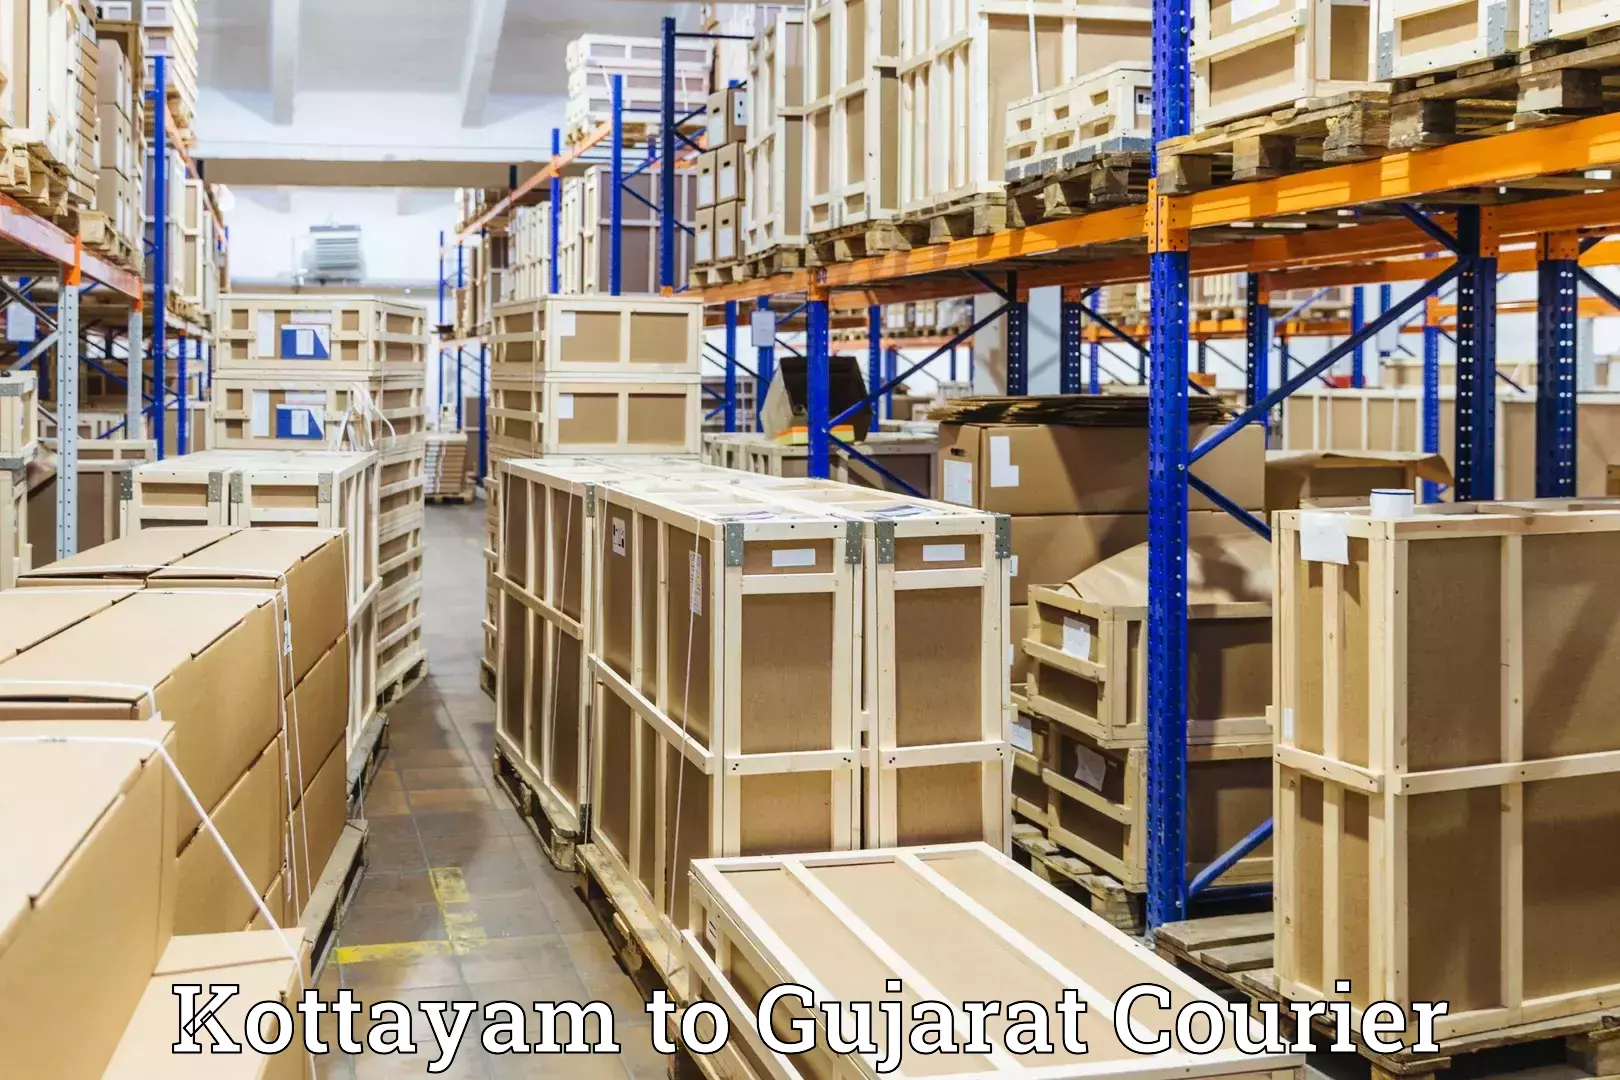 Baggage transport innovation Kottayam to Gujarat